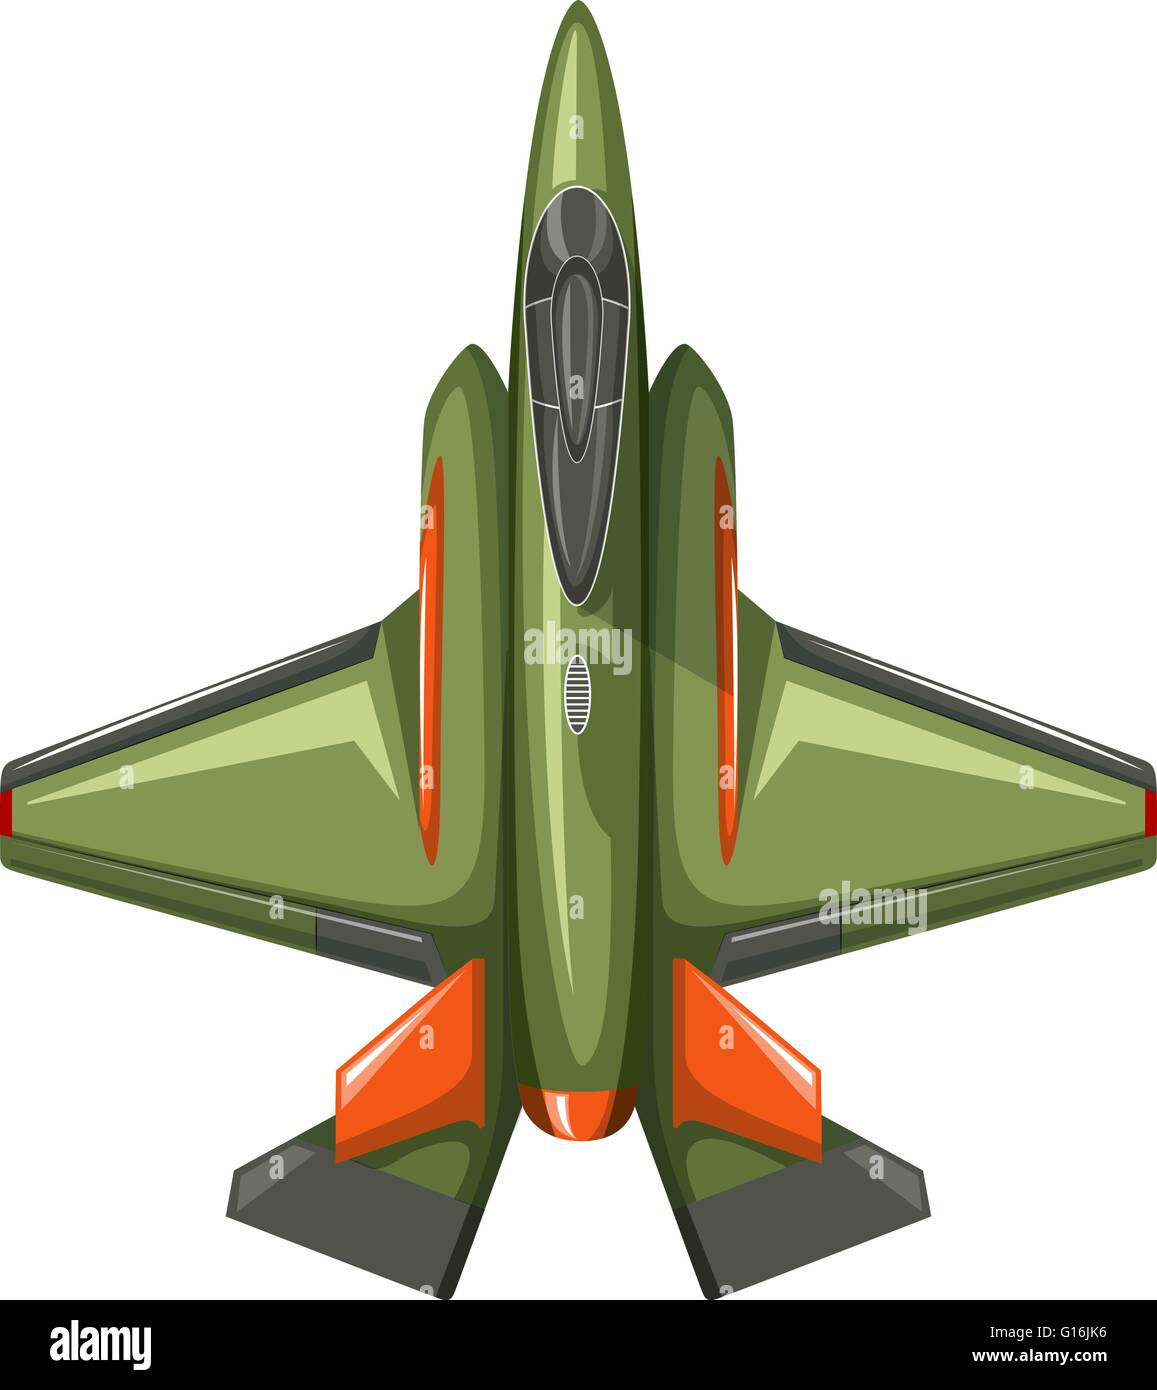 Modernes Design Jet Flugzeug Illustration Stock Vektor